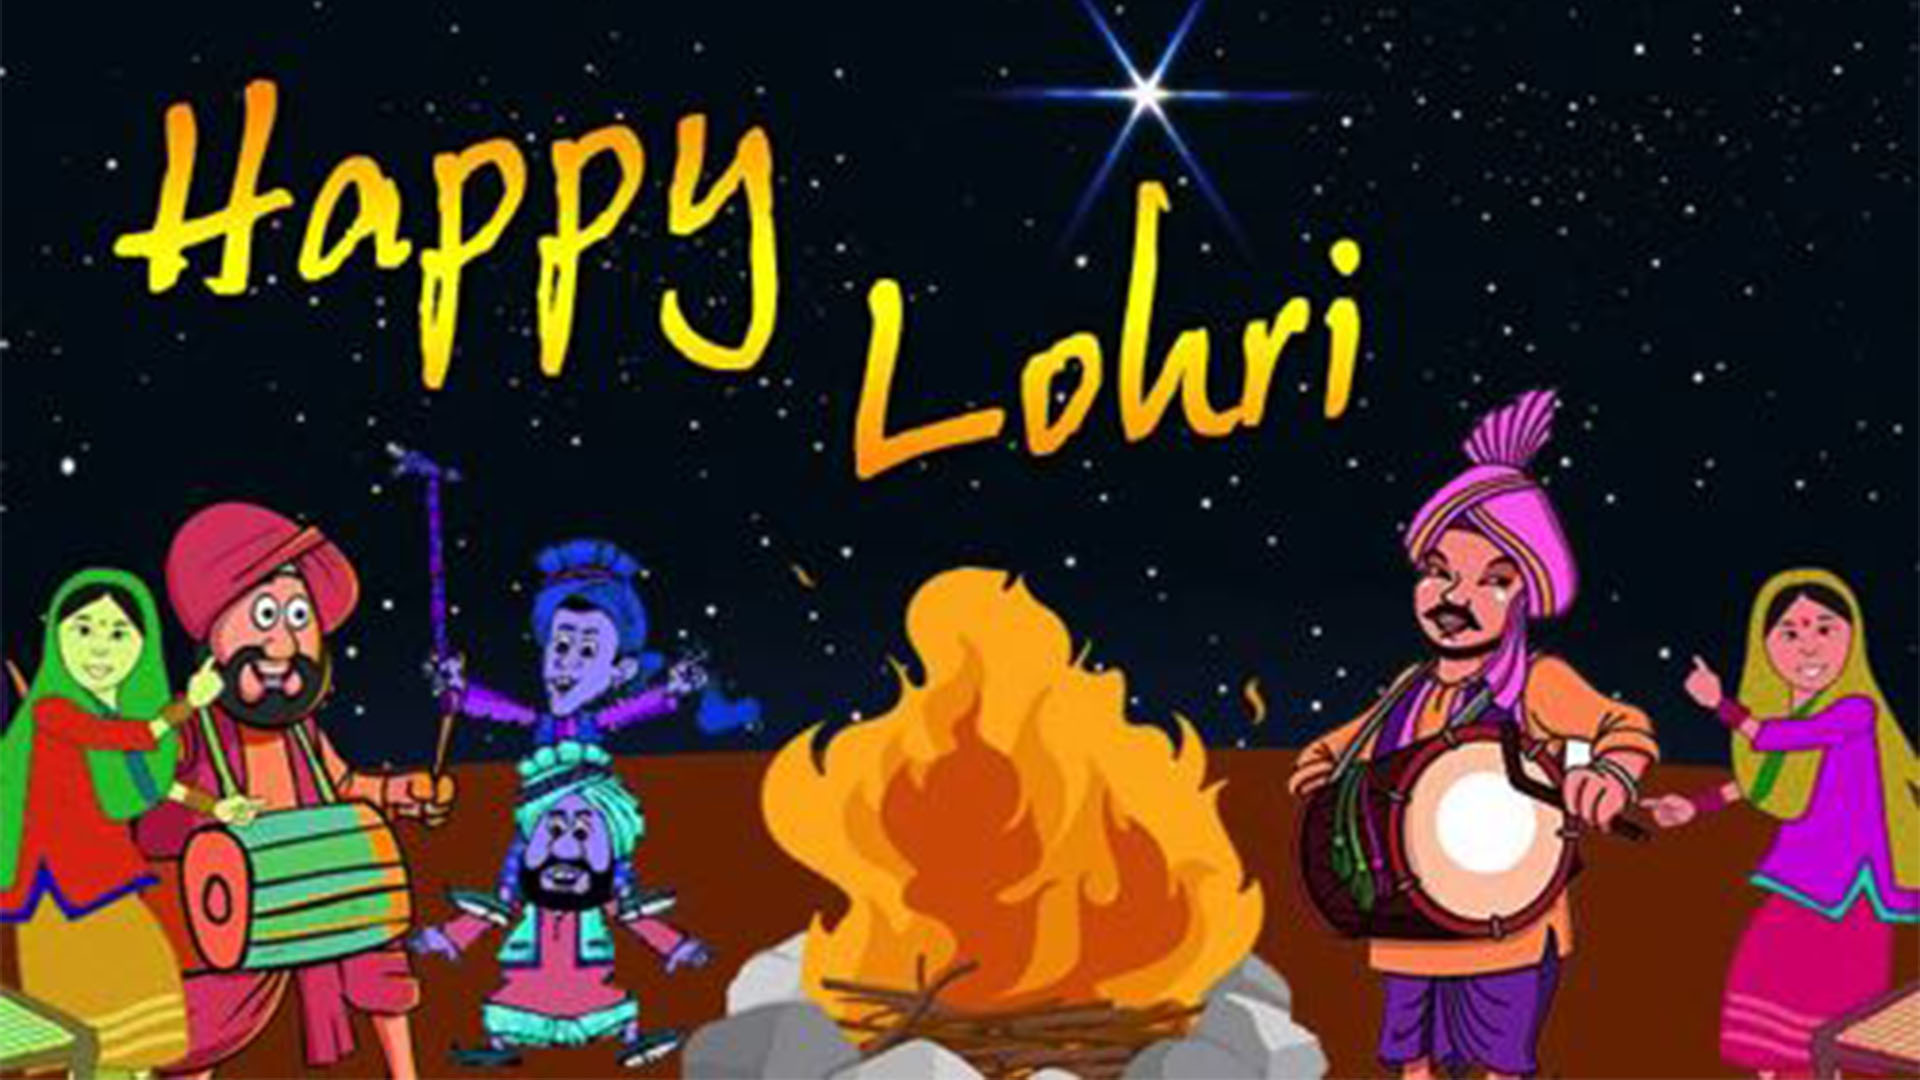 beautiful happy lohri wishes image